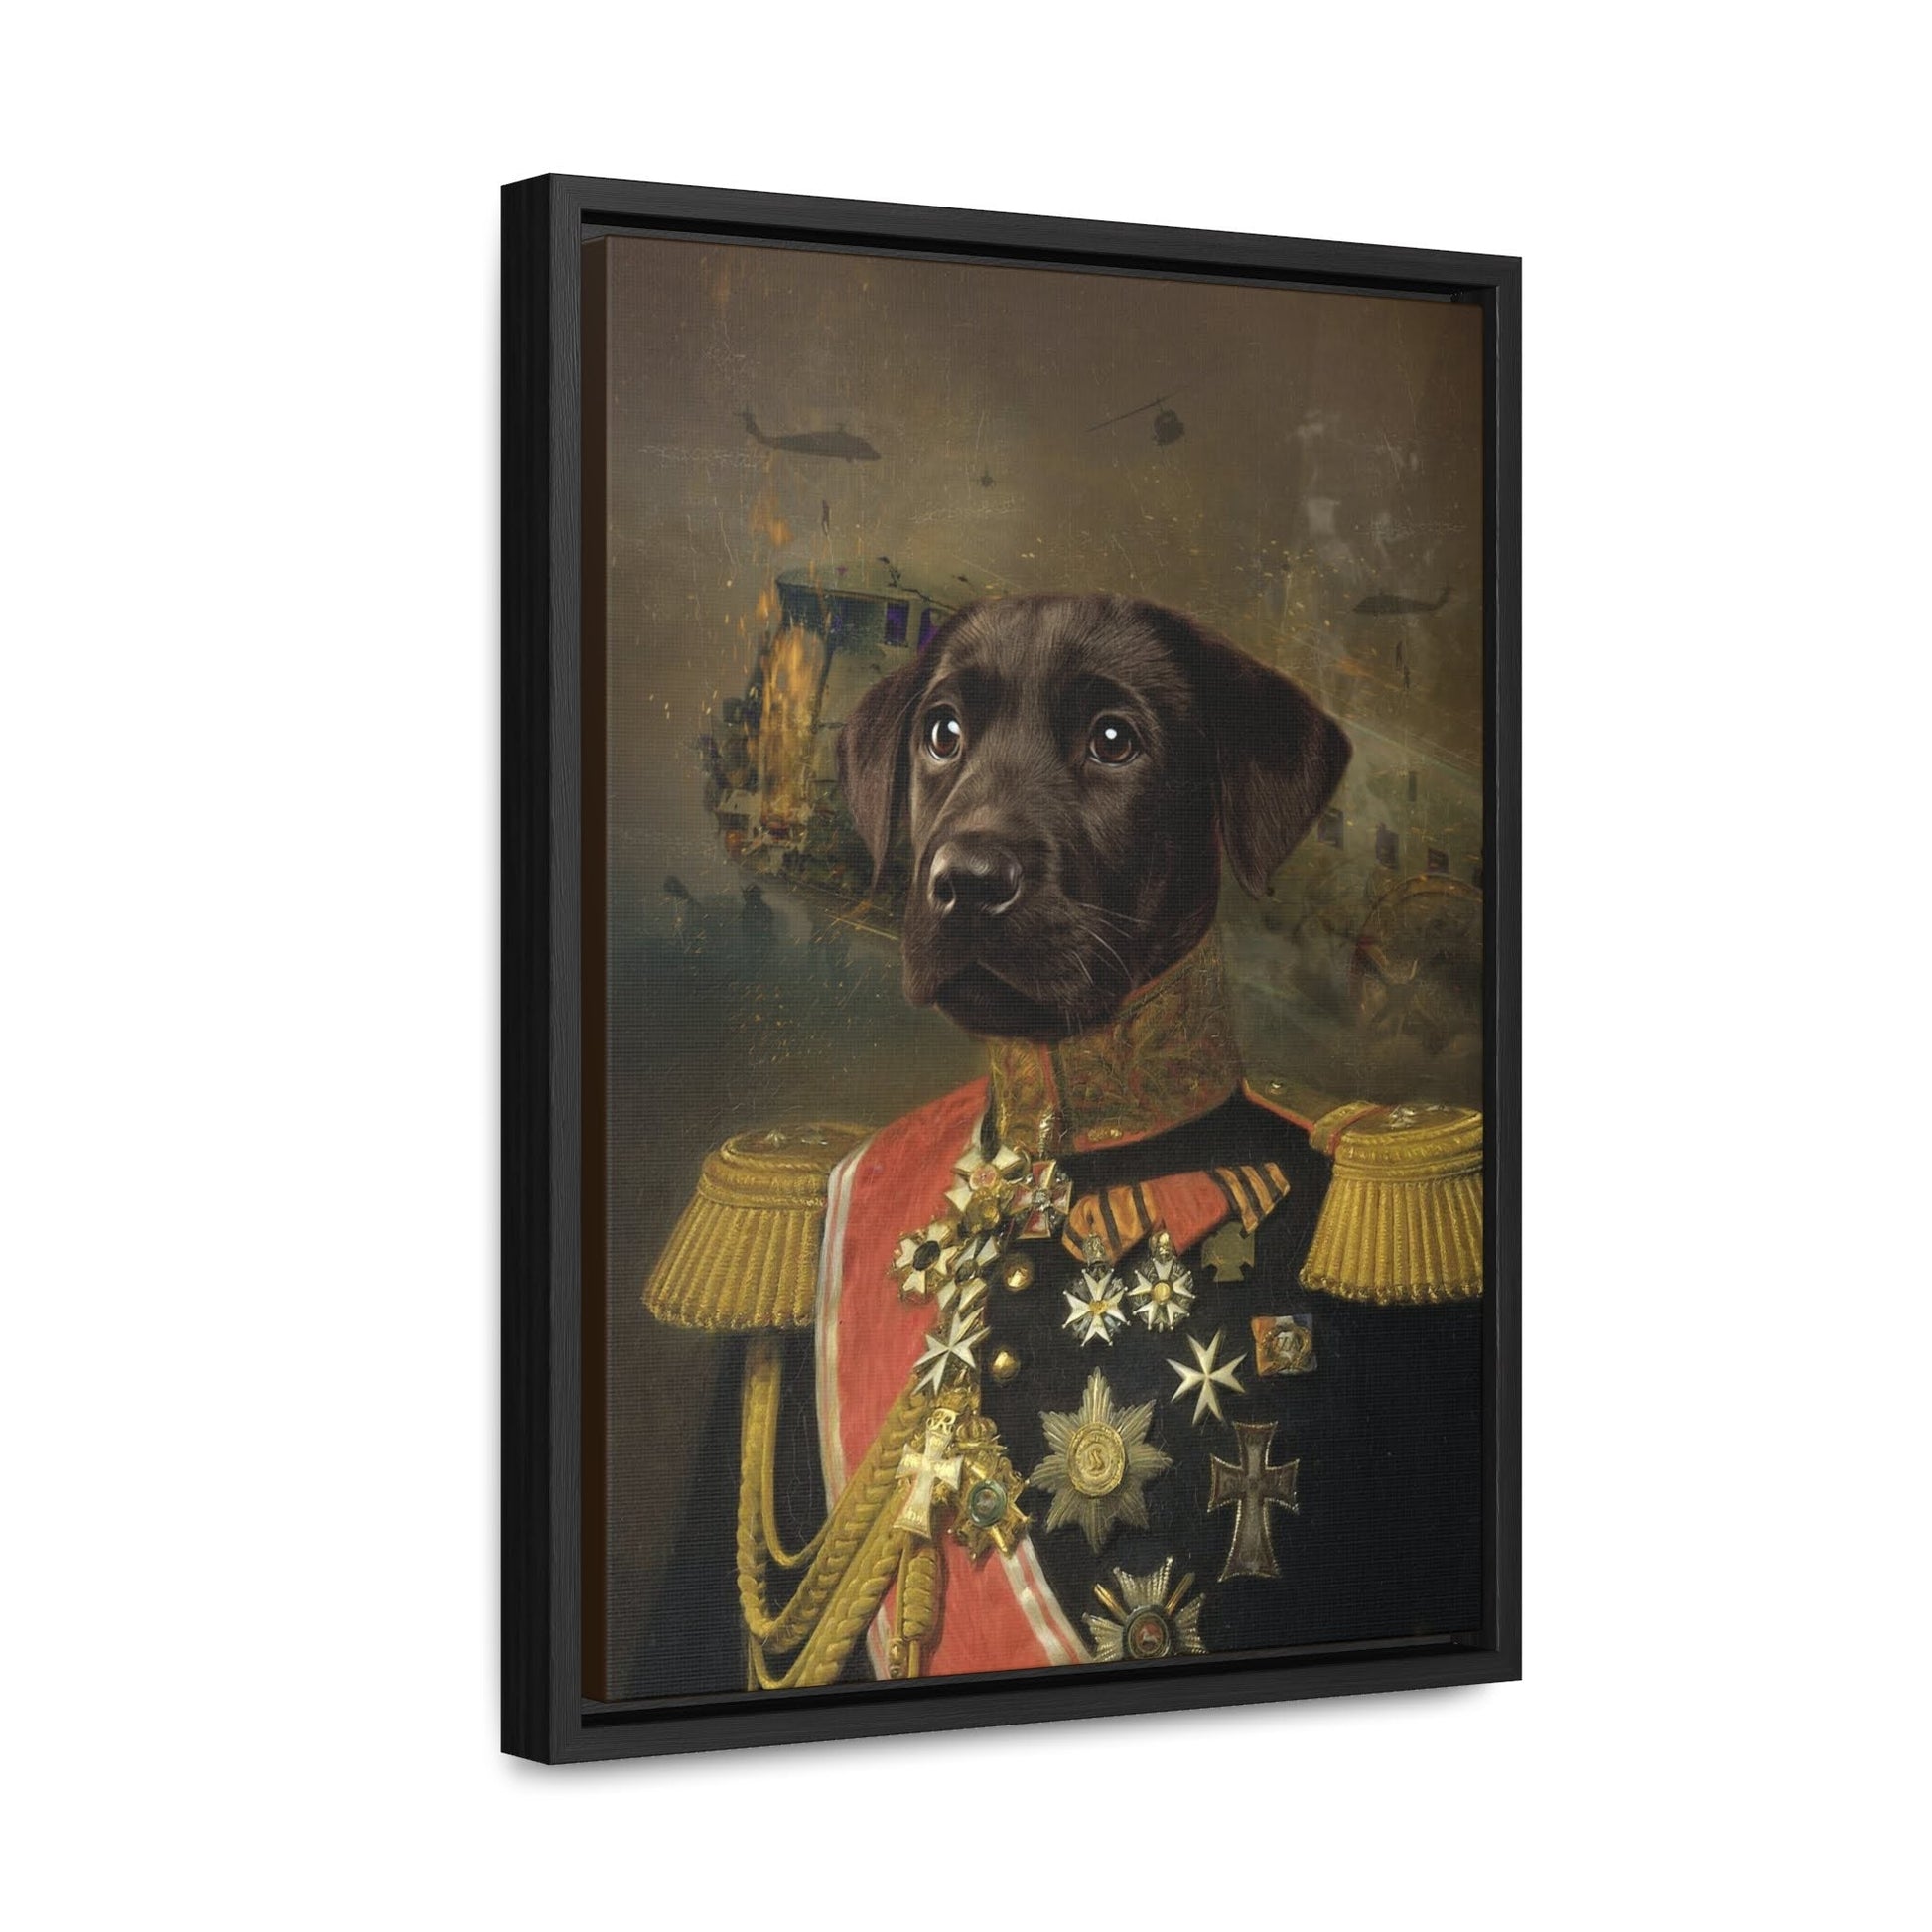 Royal dog portrait in ornate frame on canvas, exuding majesty.